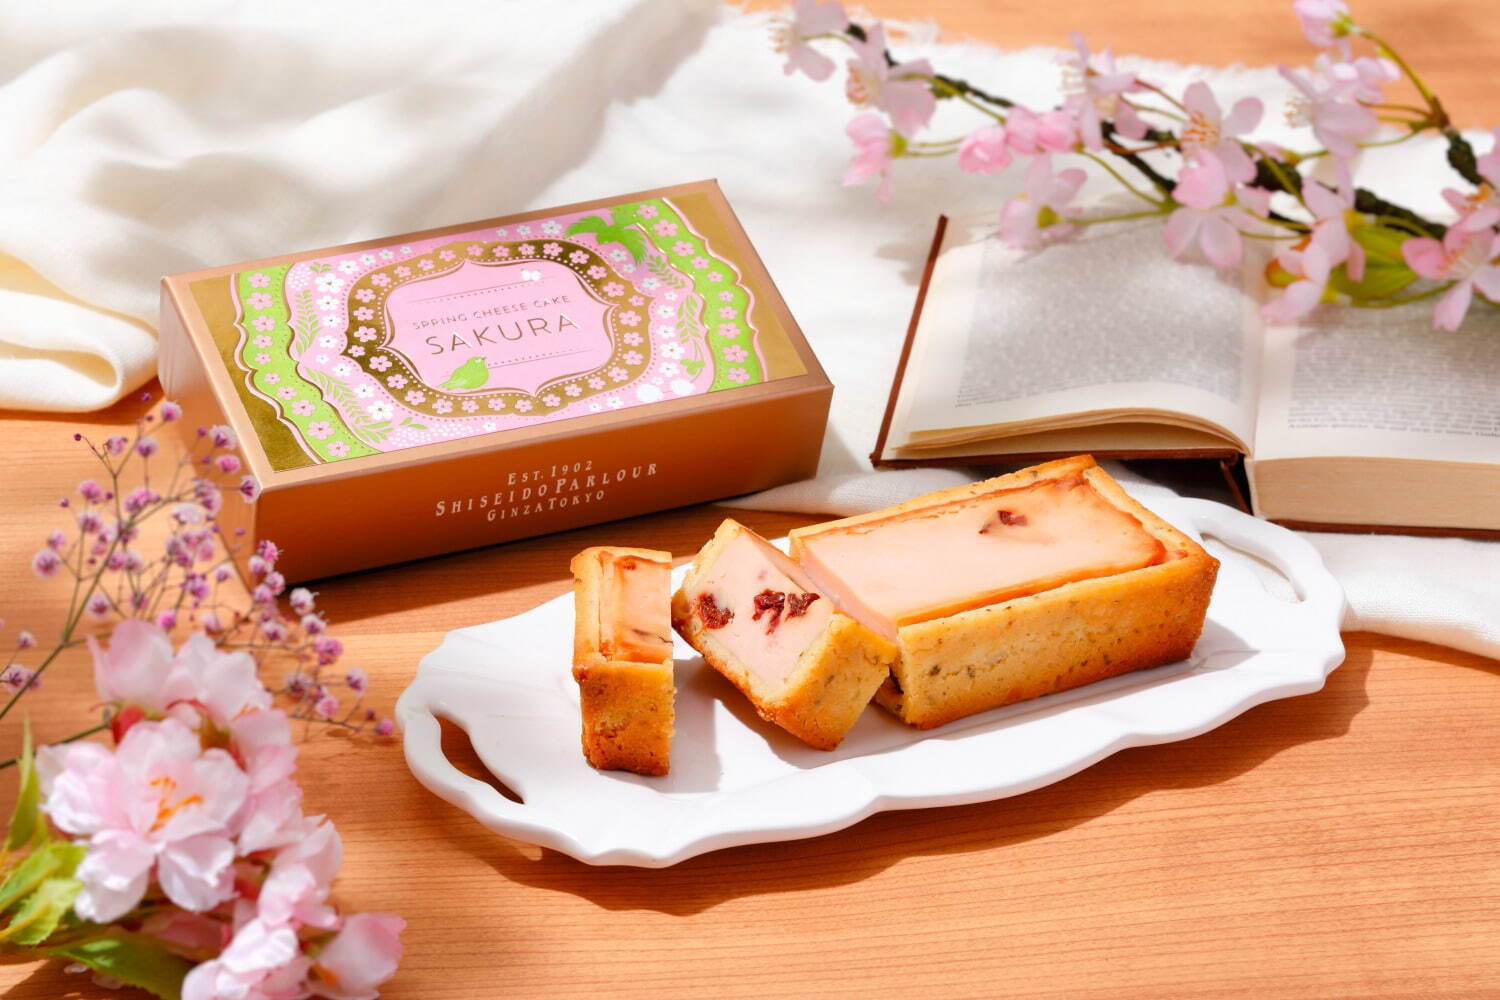 「春の手焼きチーズケーキ(さくら味)」3,456円